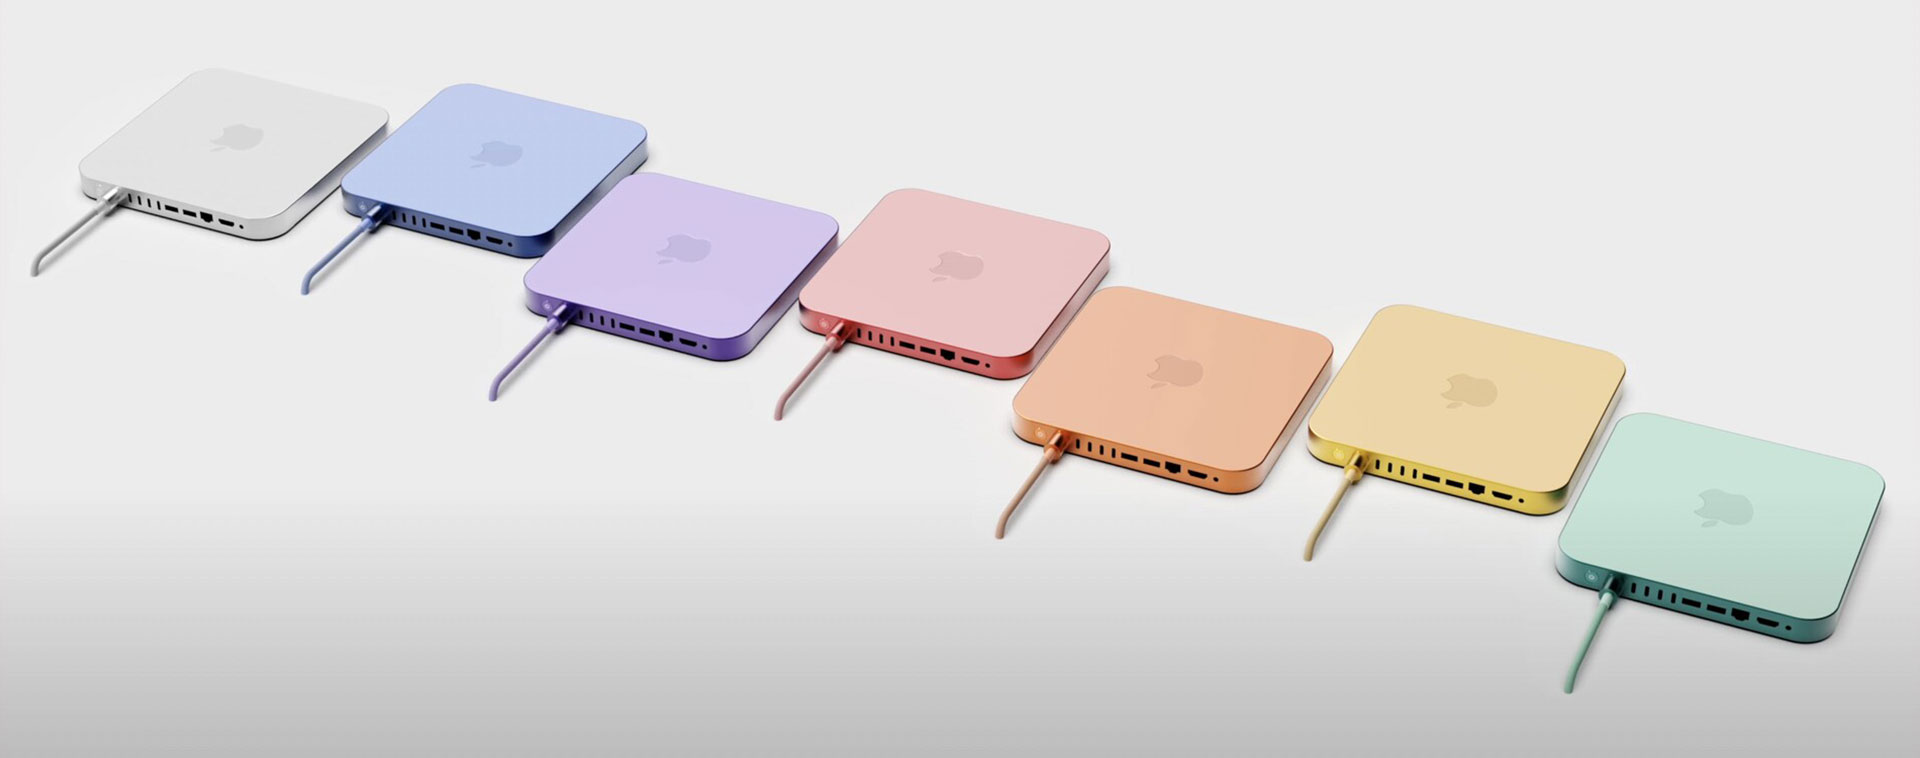 نمایش مفهومی Apple Mac mini 2022 در رنگ های مختلف